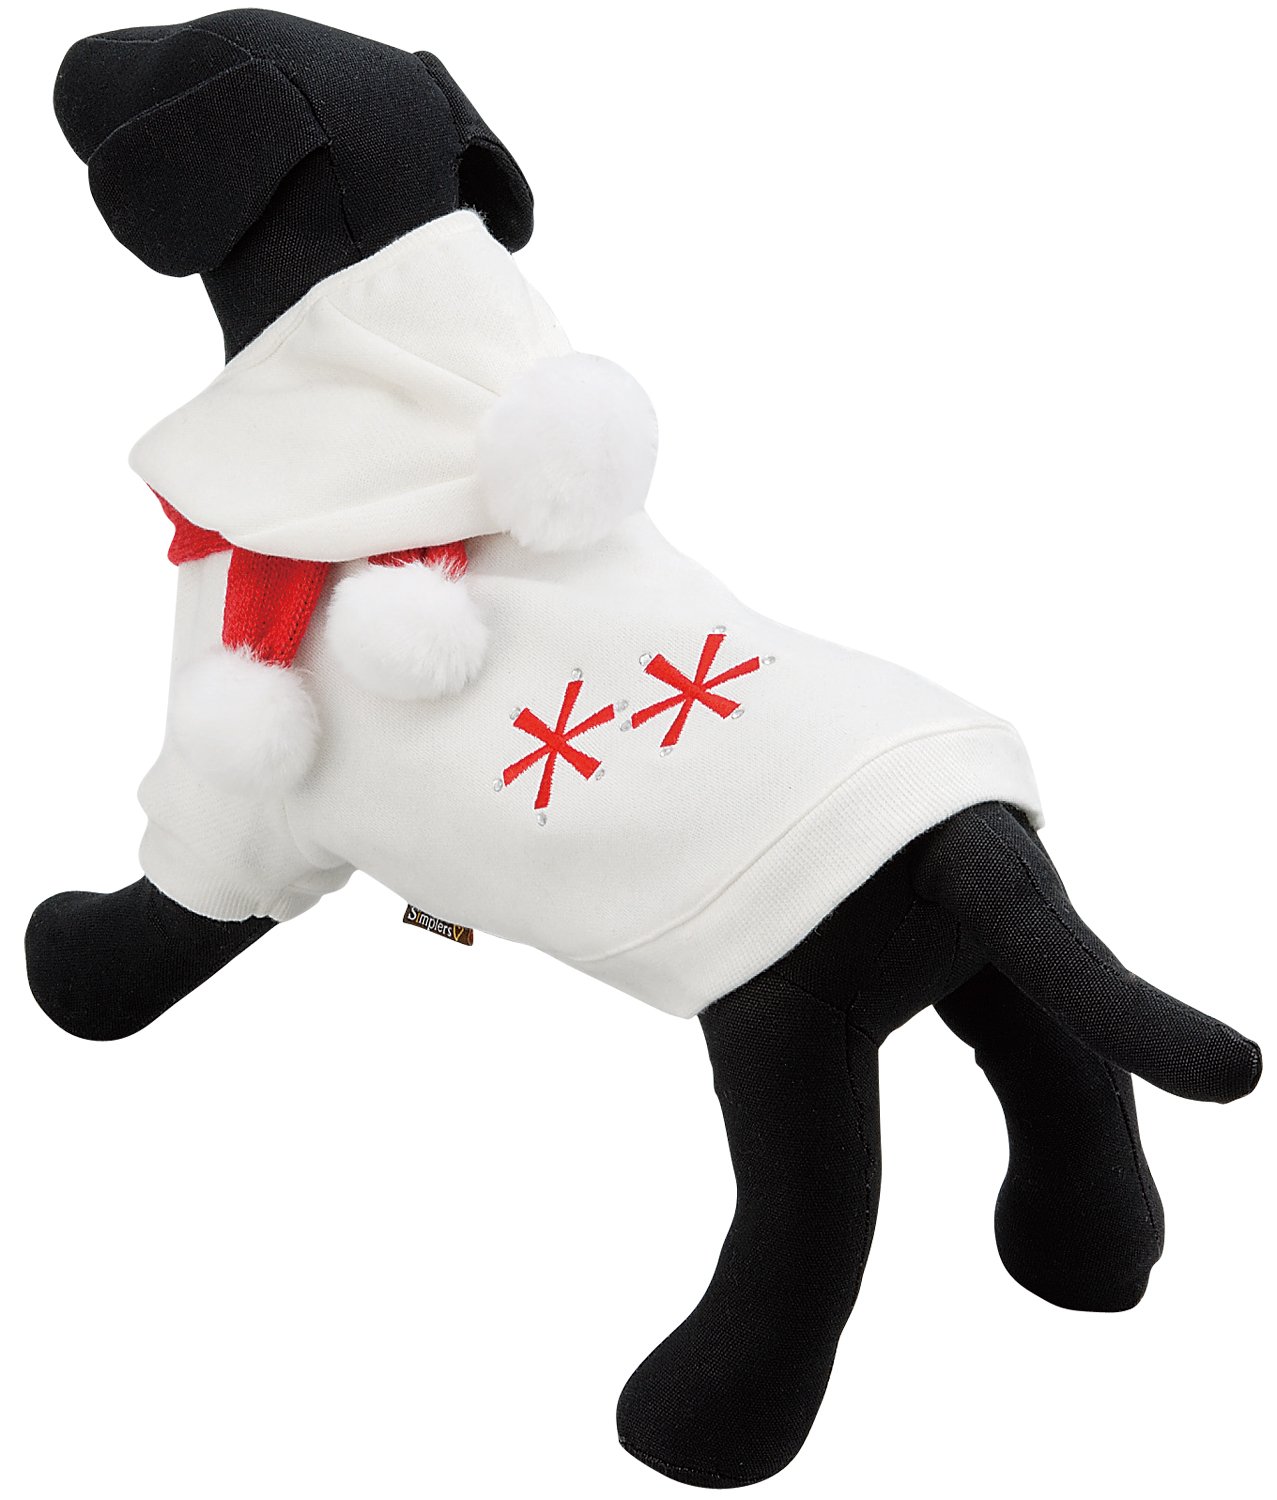 犬 洋服 SimplersV ポンポン マフラー 帽子付き トレーナー SD | オフホワイト 